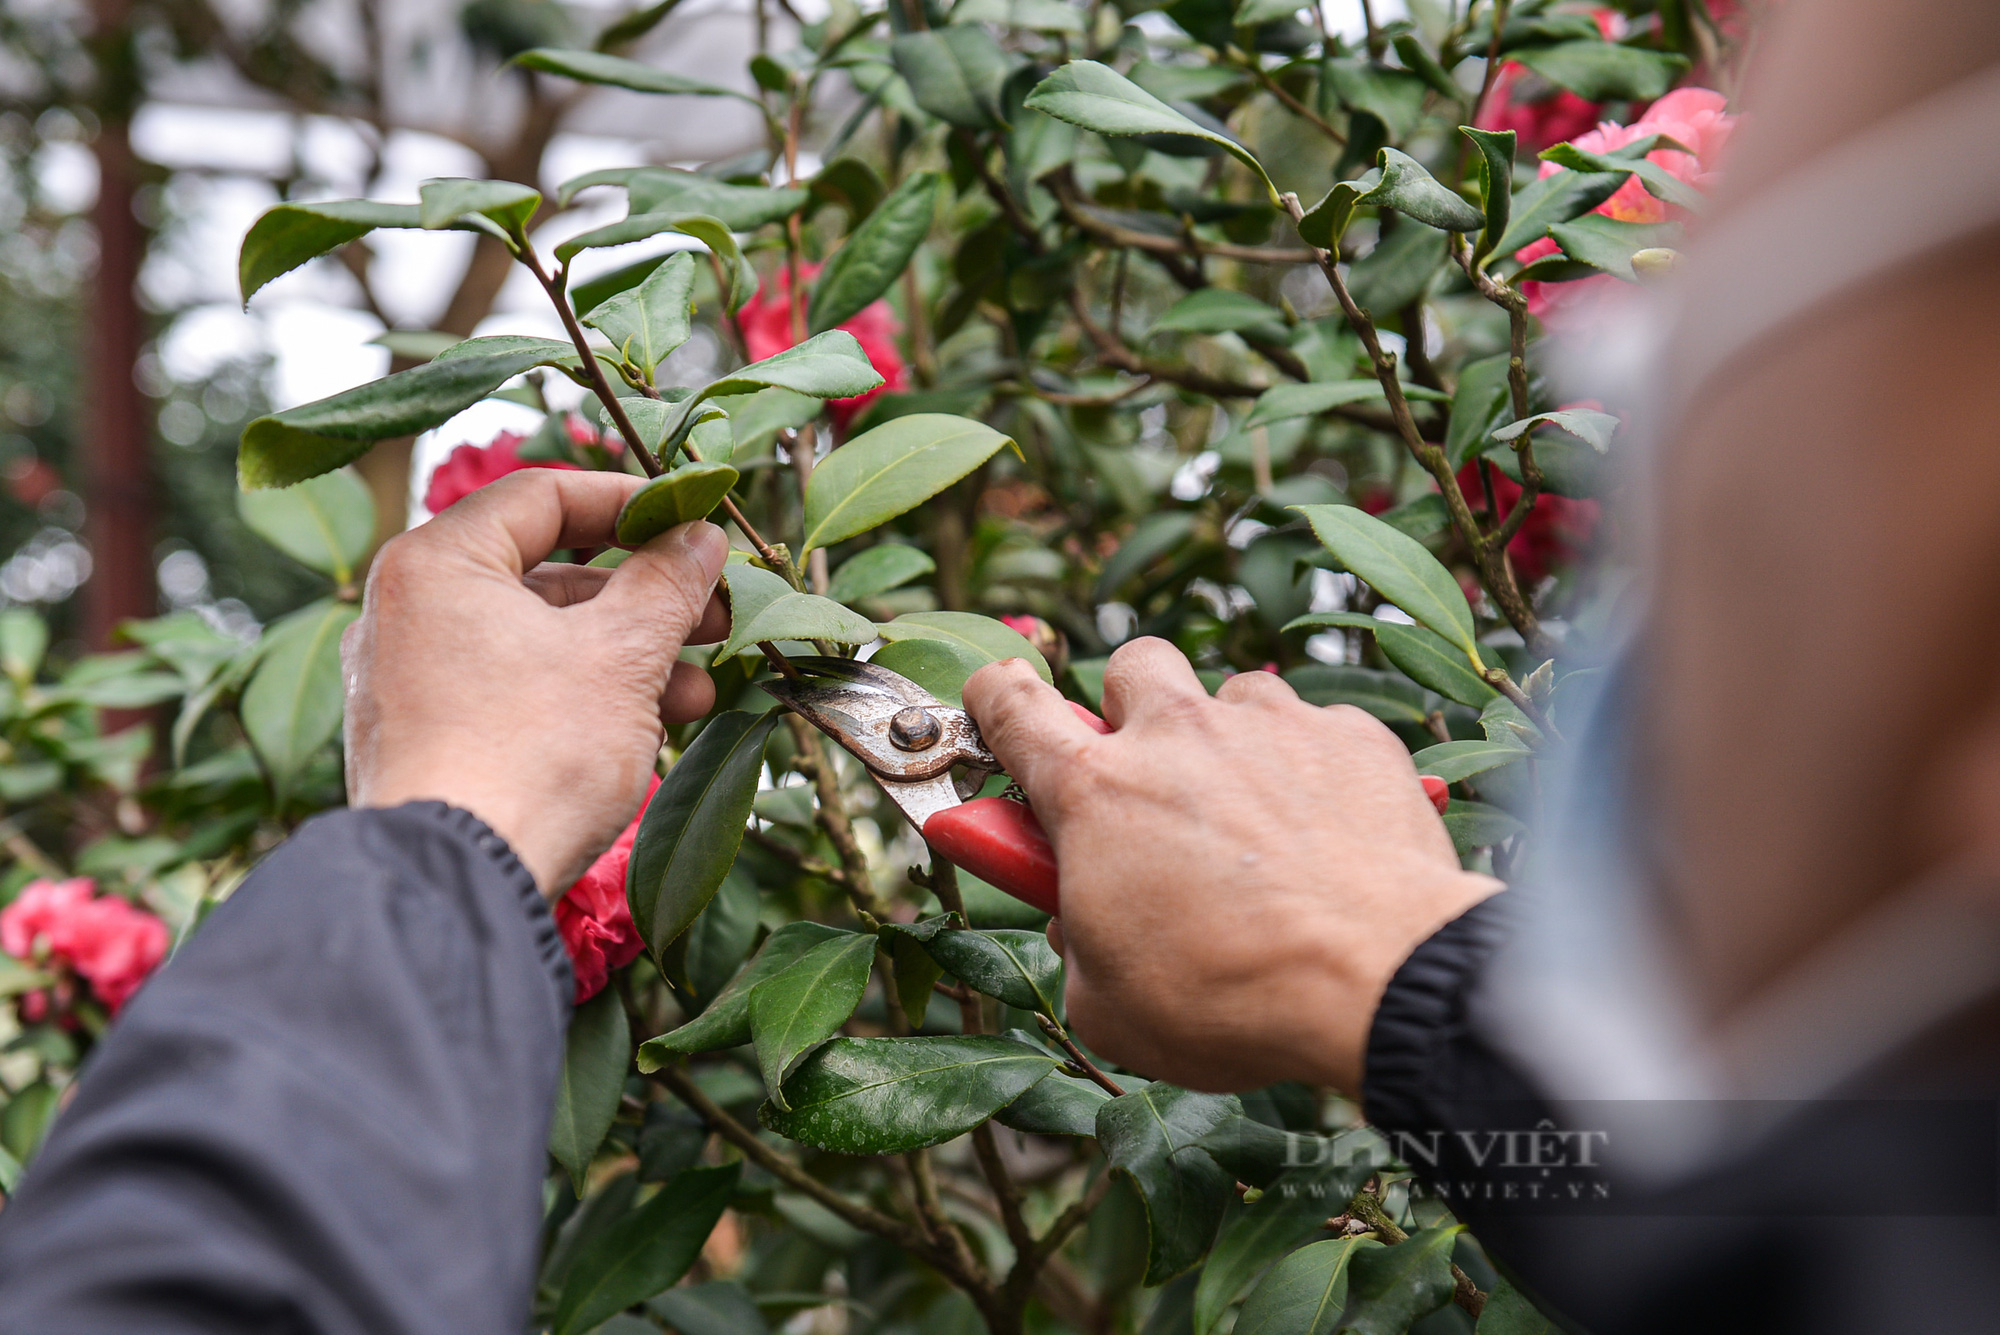 Ghé thăm vườn hoa trà trị giá bạc tỉ của anh nông dân tại Hưng Yên - Ảnh 6.